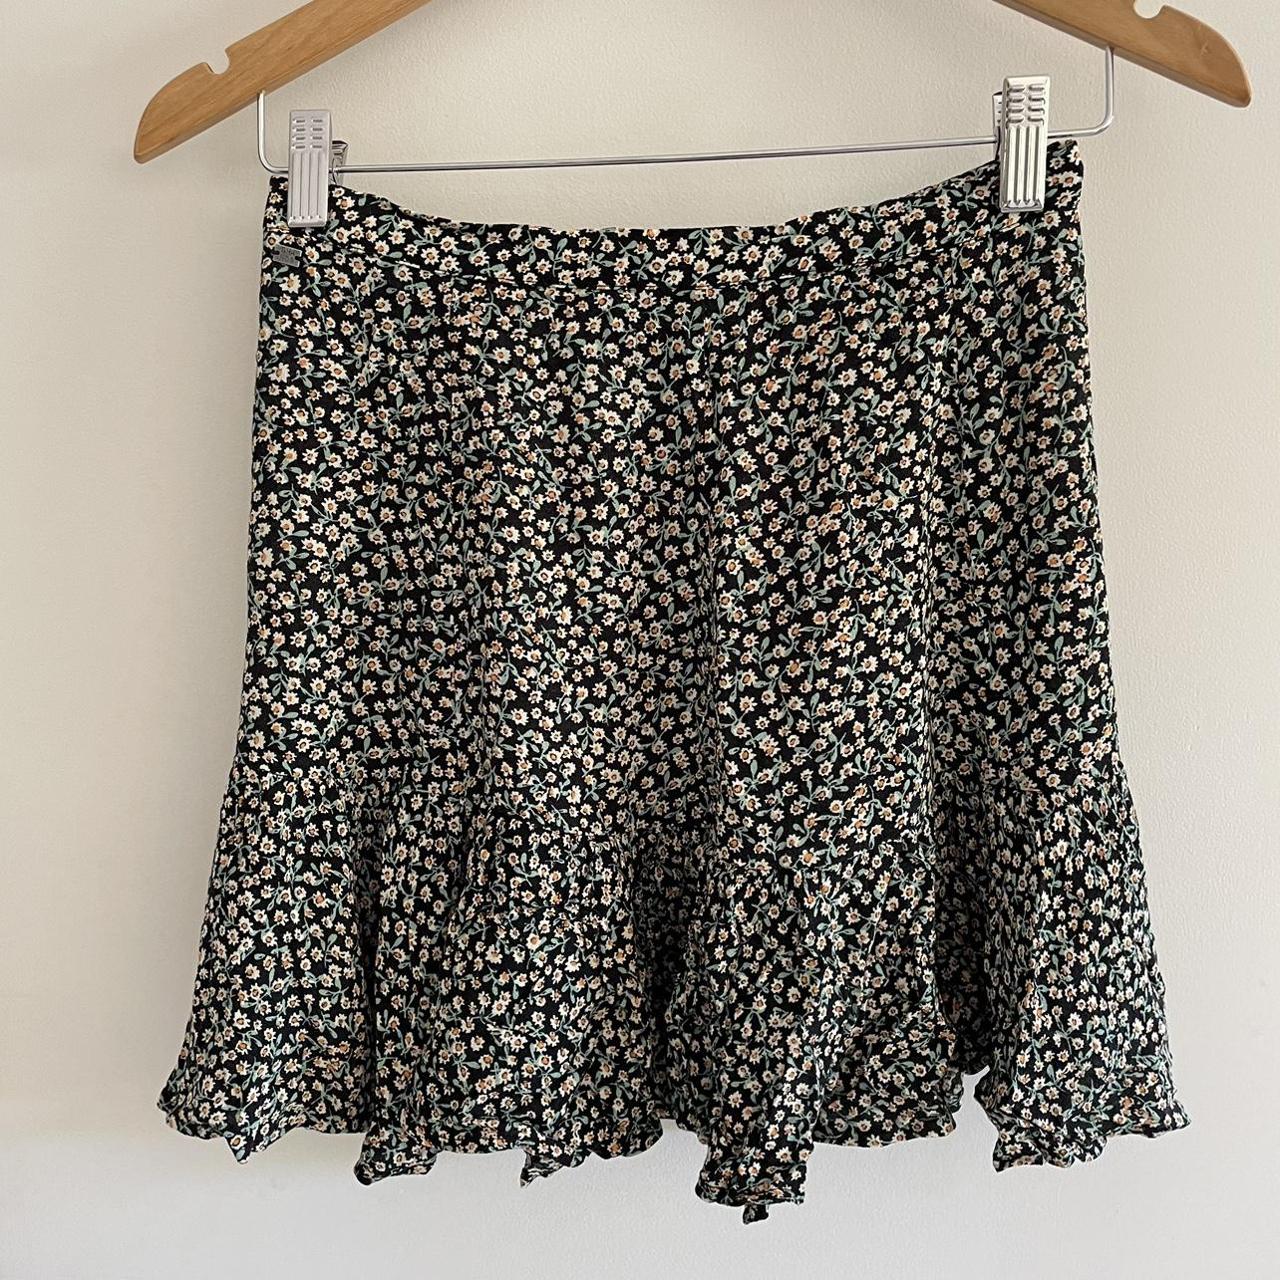 Ghanda flower skirt size 6/xs #flower - Depop